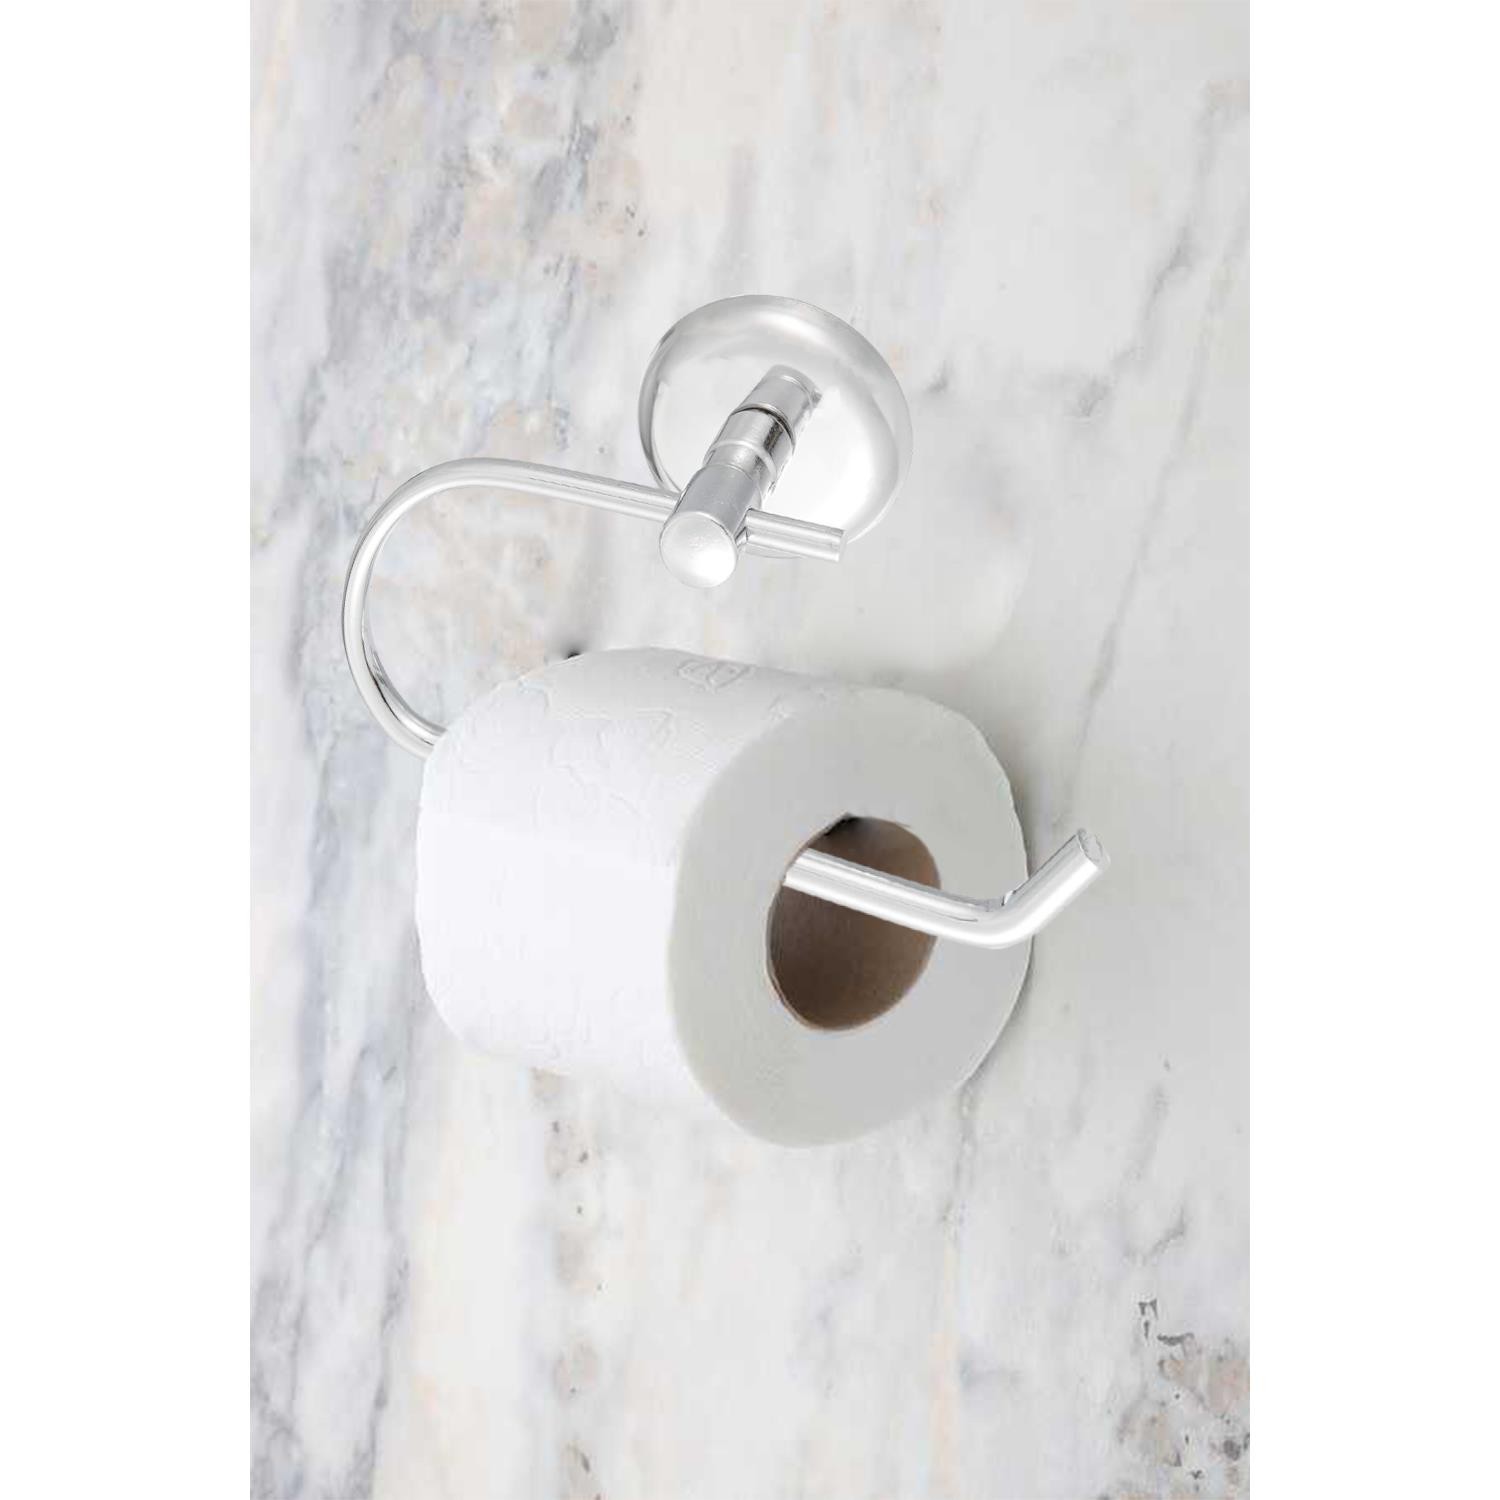 Tuvalet Kağıtlık Aparat Kapalı WC Kağıt Standı Bez Havluluk Paslanmaz Metal Sağlam Krom